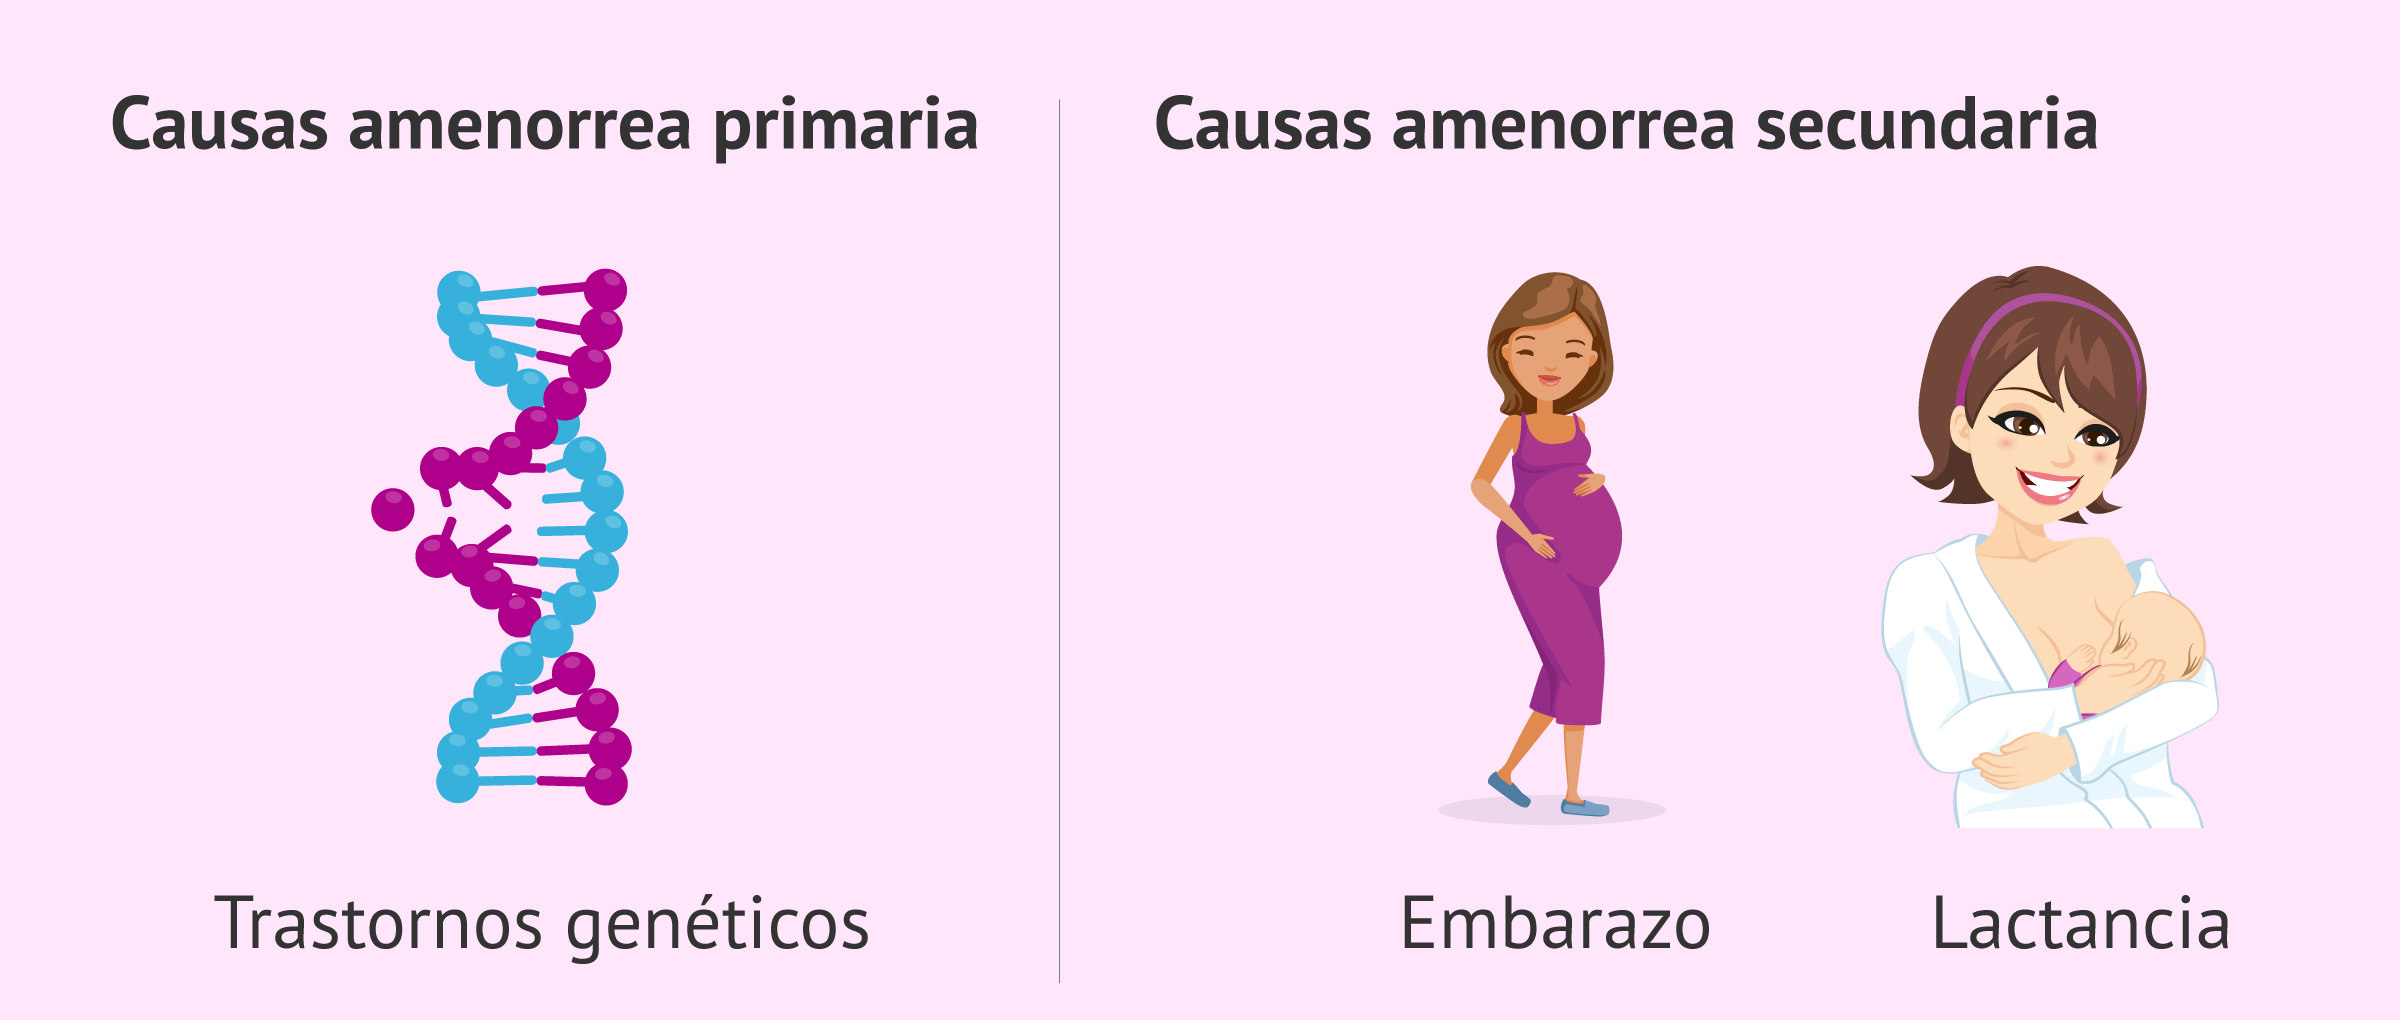 Causas primarias y secundarias de la amenorrea